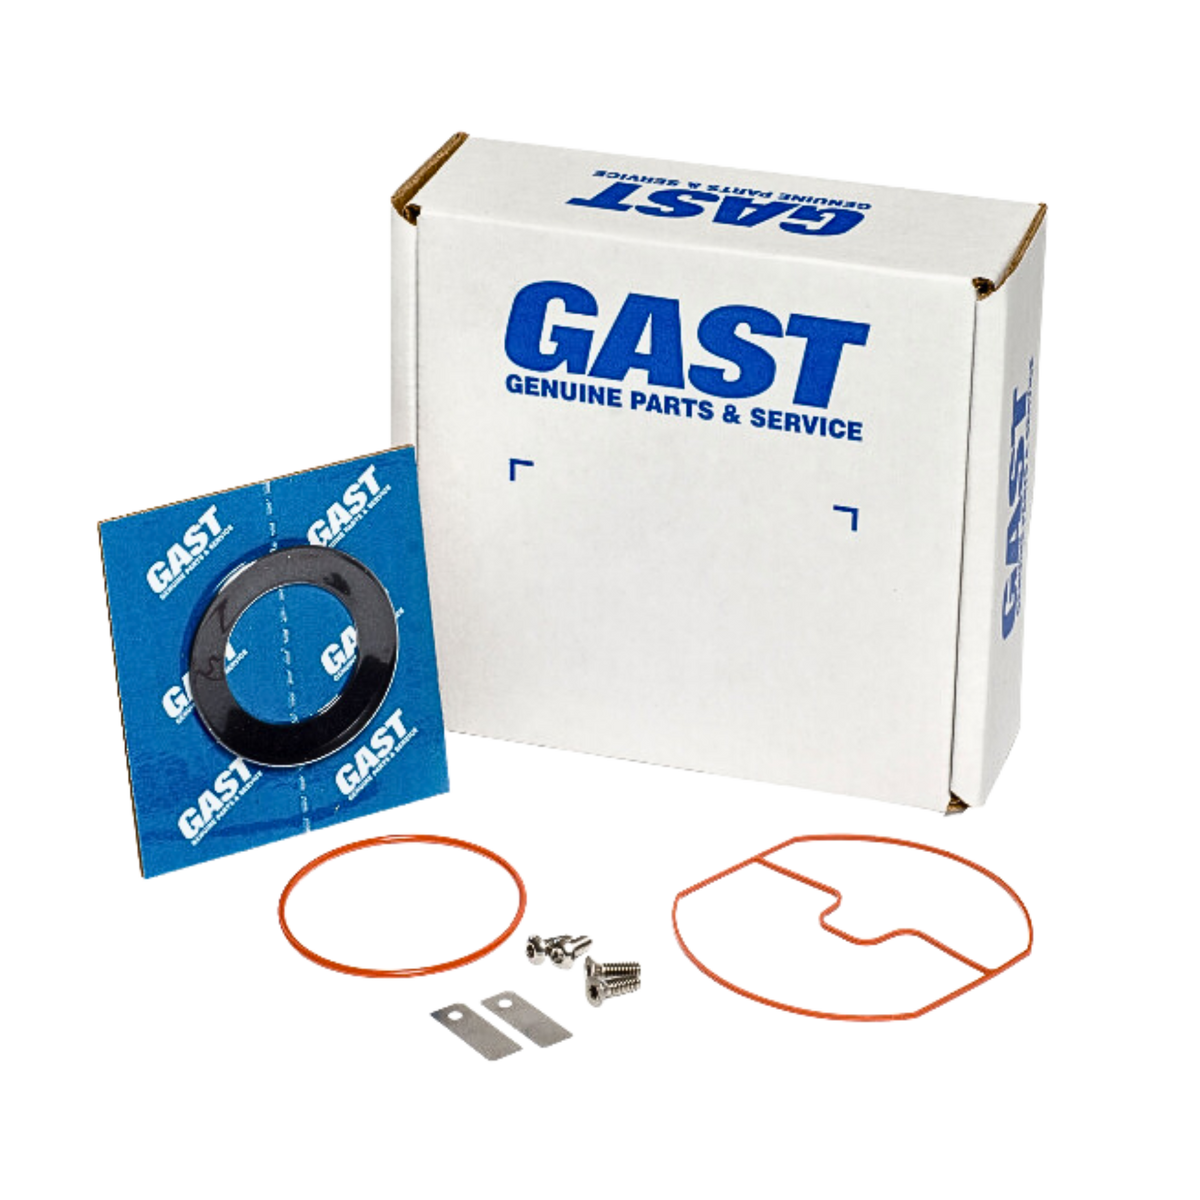 Gast | 74R1 Service Kit | K806 used on gast product line